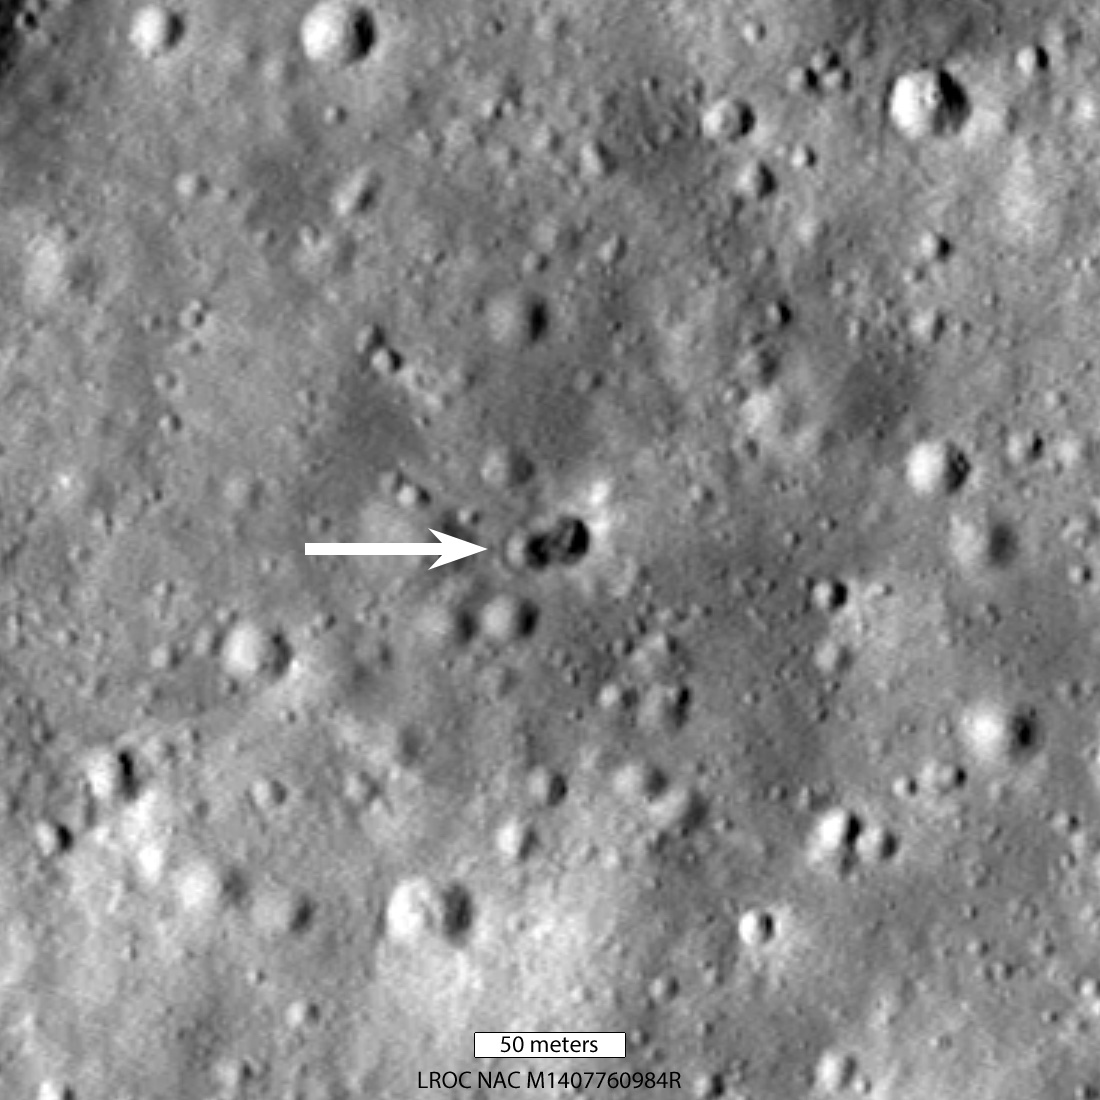 Un estudio afirma que un cohete chino que transportaba un objeto “no declarado” chocó con la luna y dejó dos cráteres